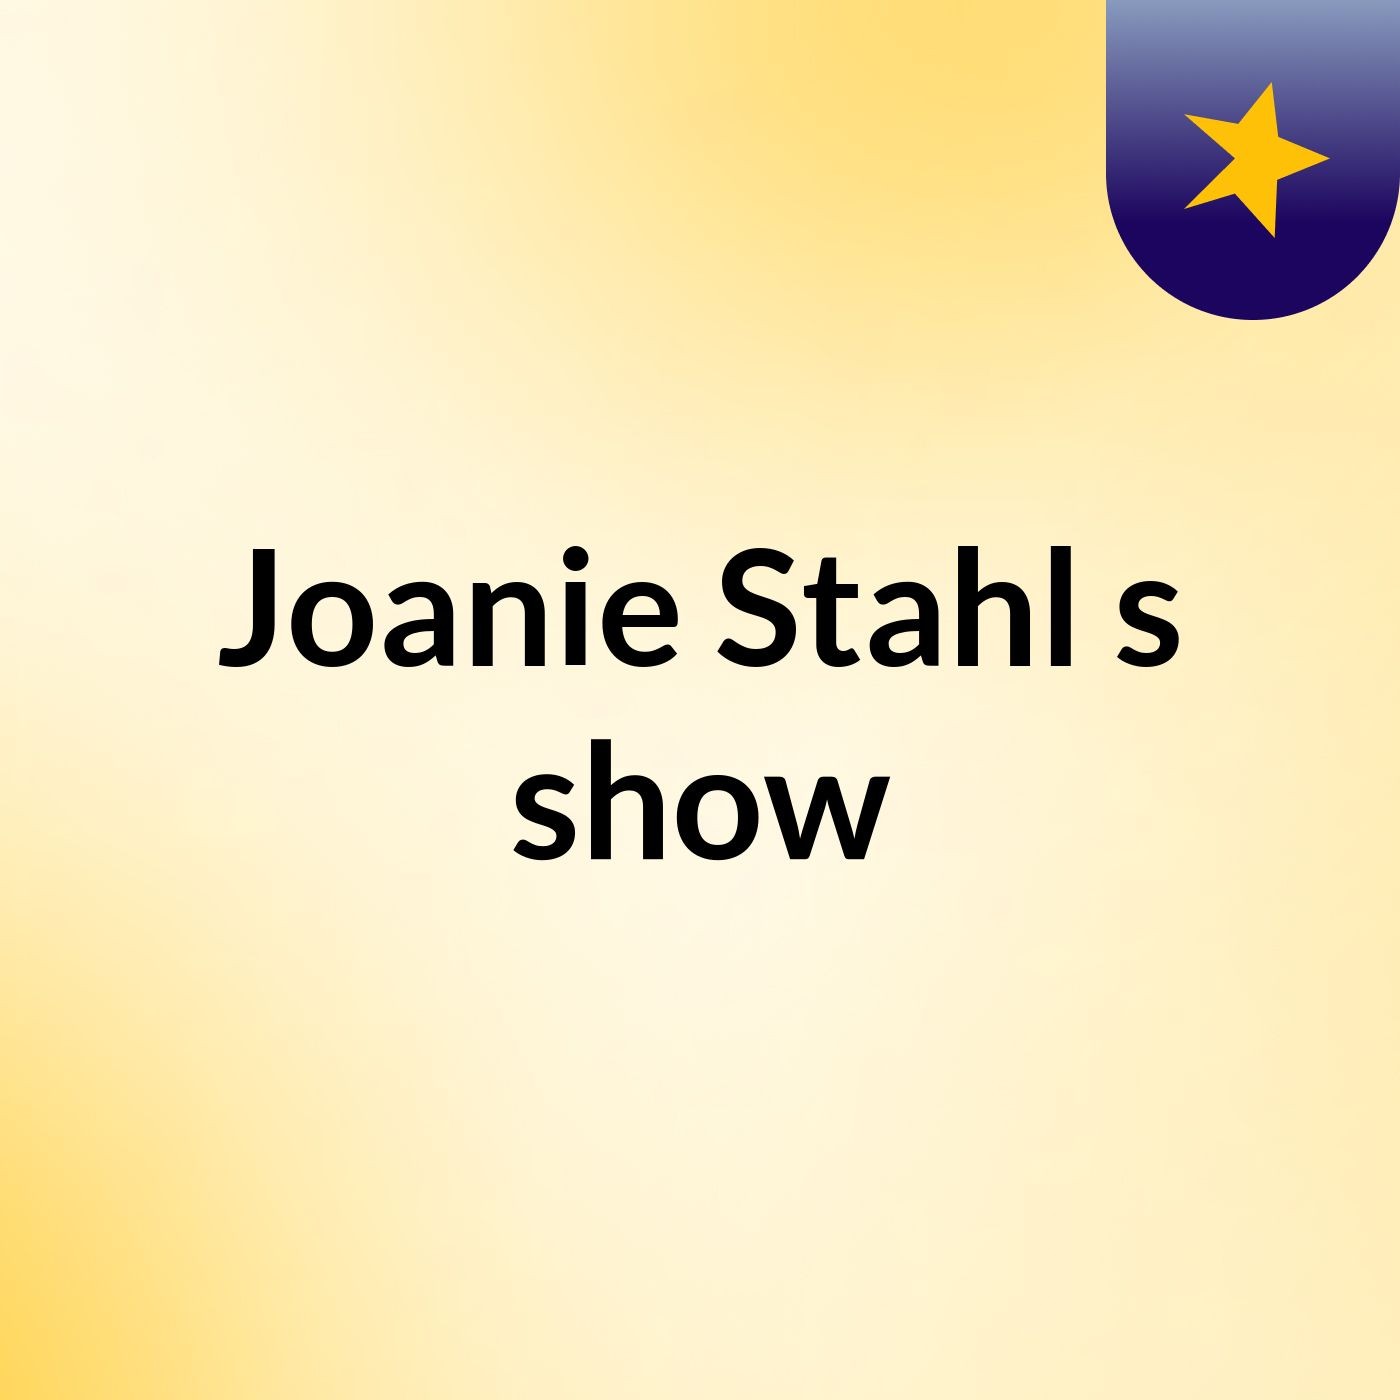 Joanie Stahl's show